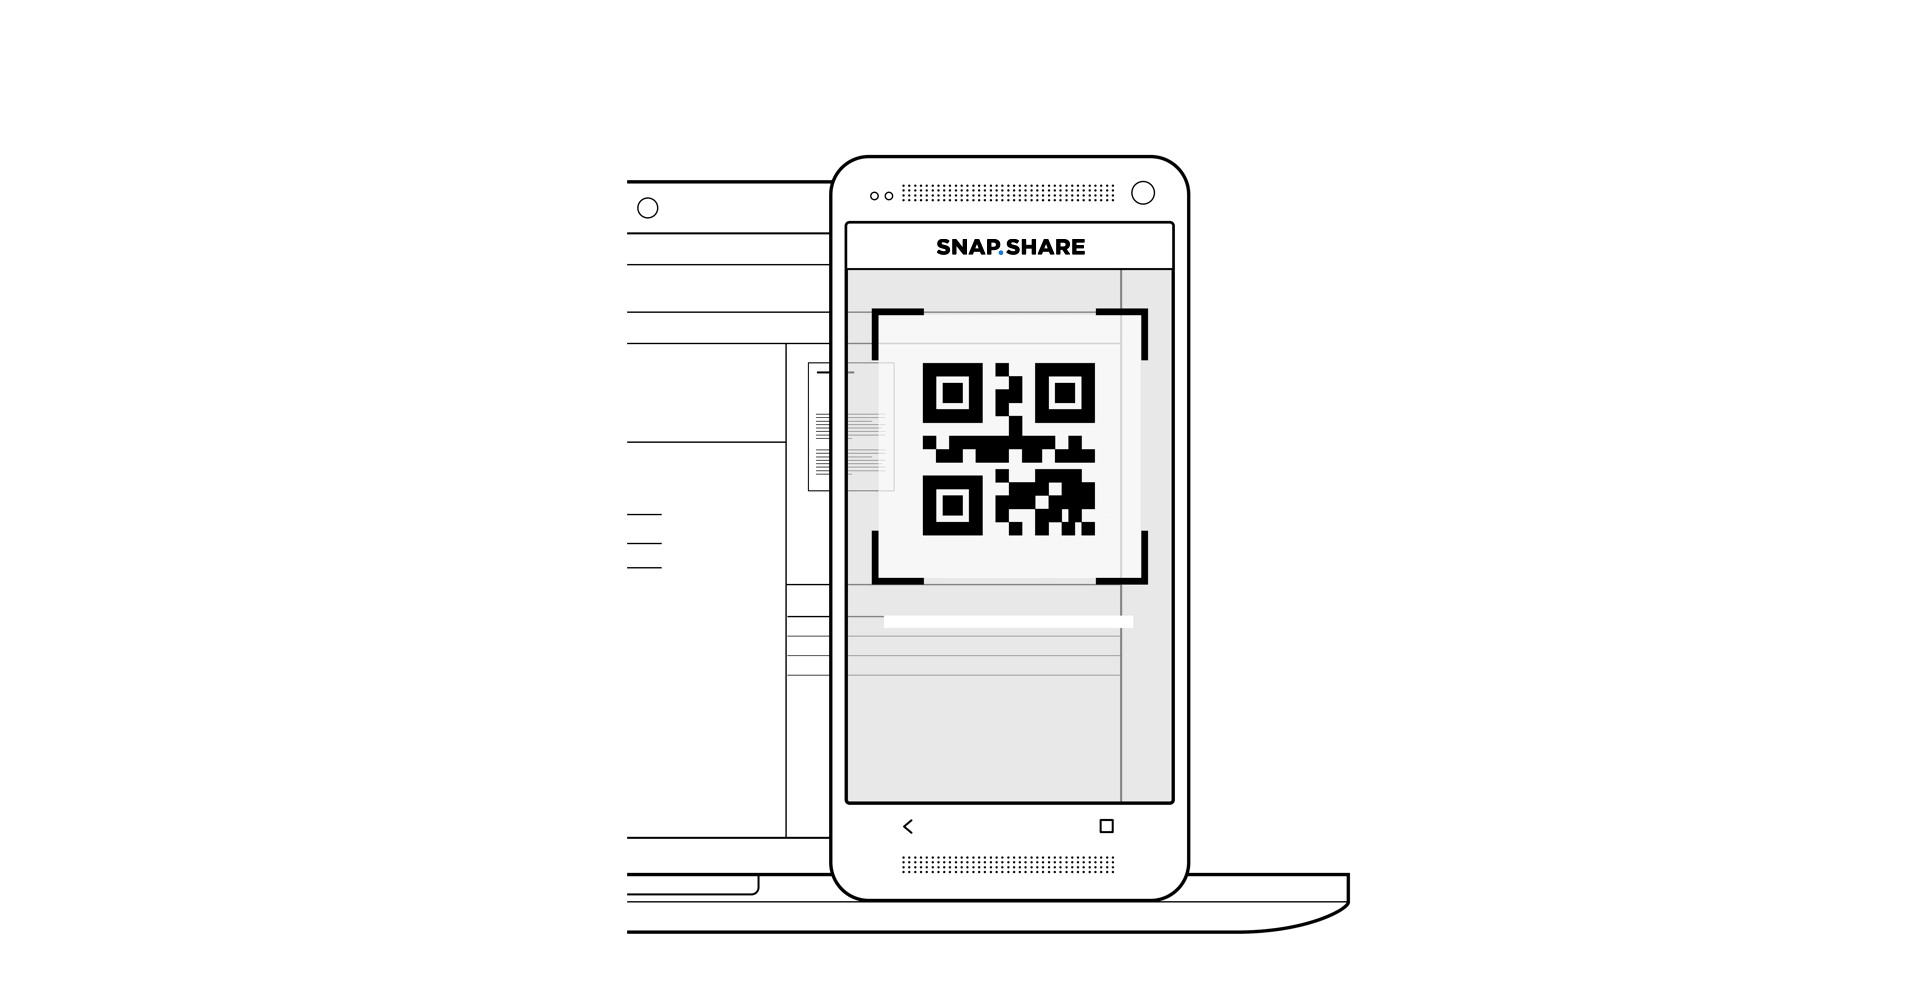 Photographier l'ID Snapshare (QR-Code) avec l'appareil-photo du smartphone